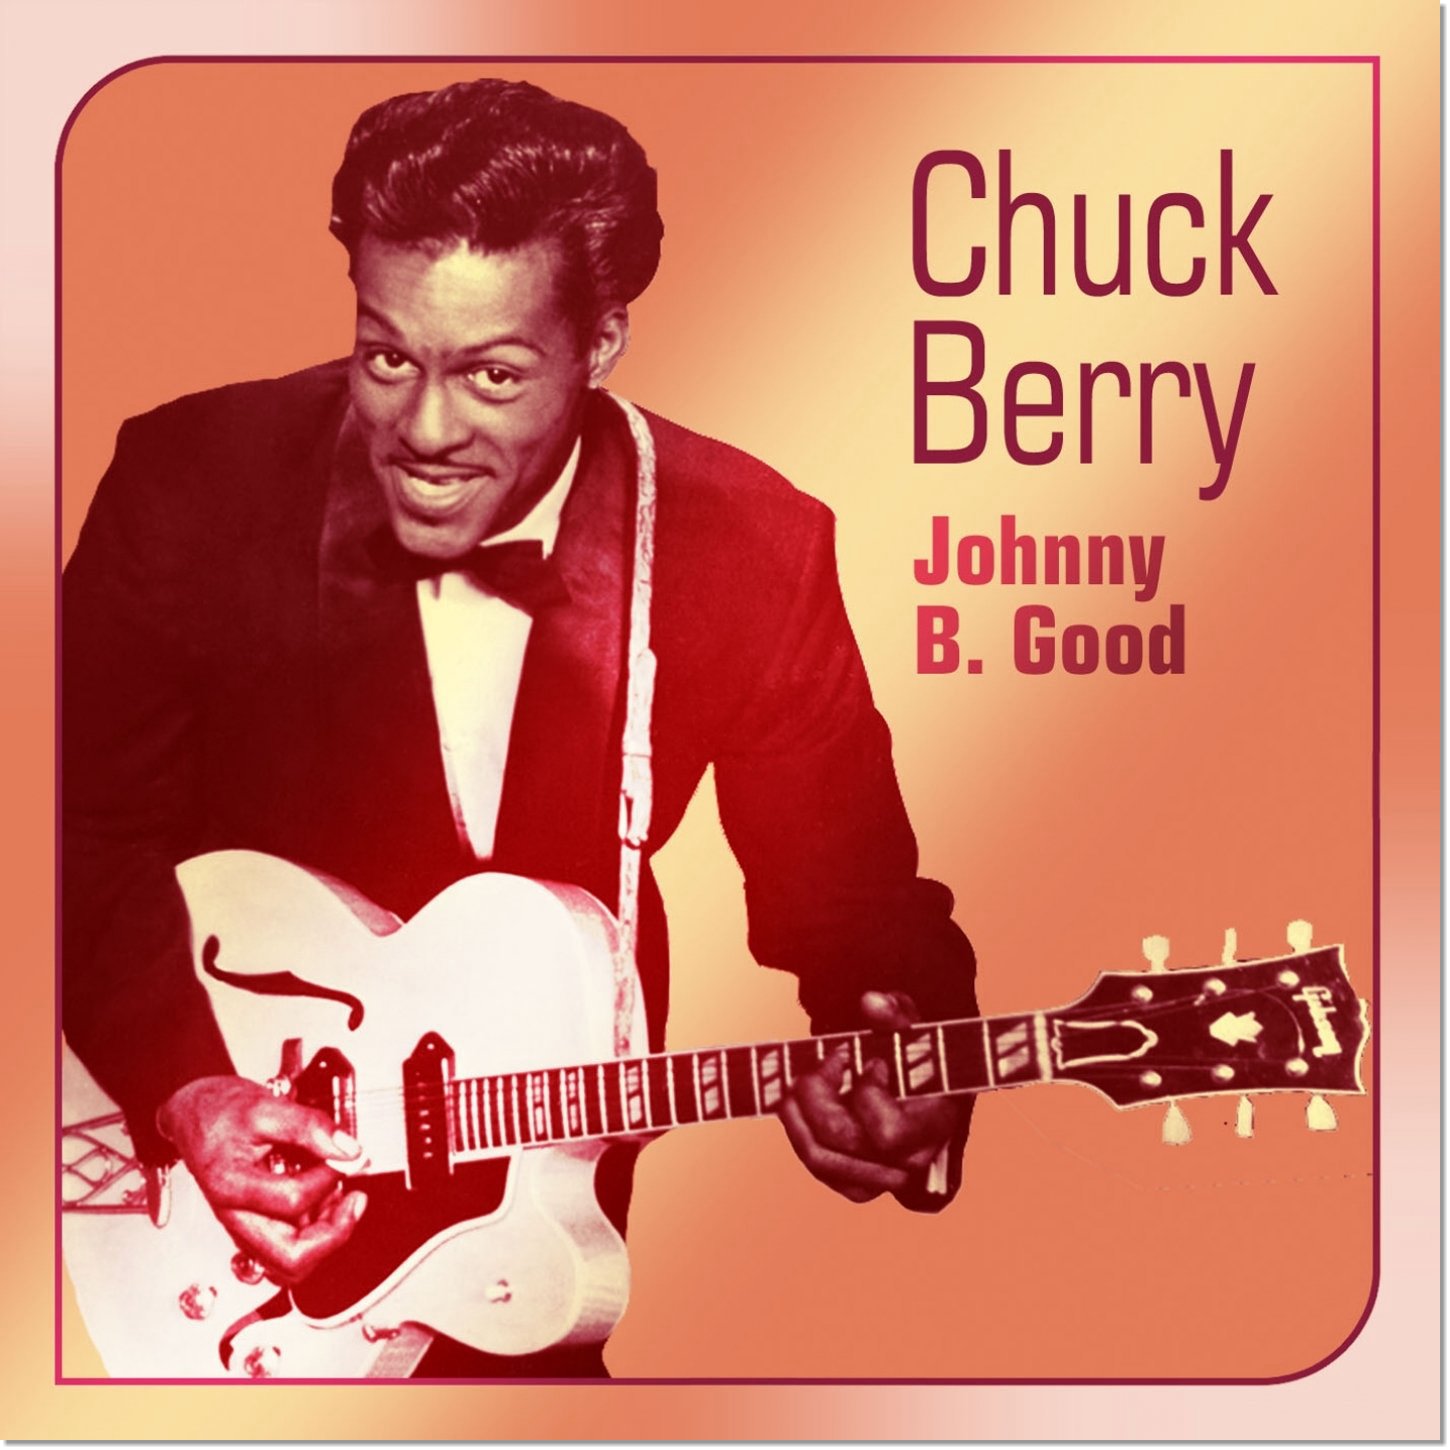 チャック・ベリー(CHUCK BERRY) / ジョニー・B.グッド(JOHNNY B. GOODE